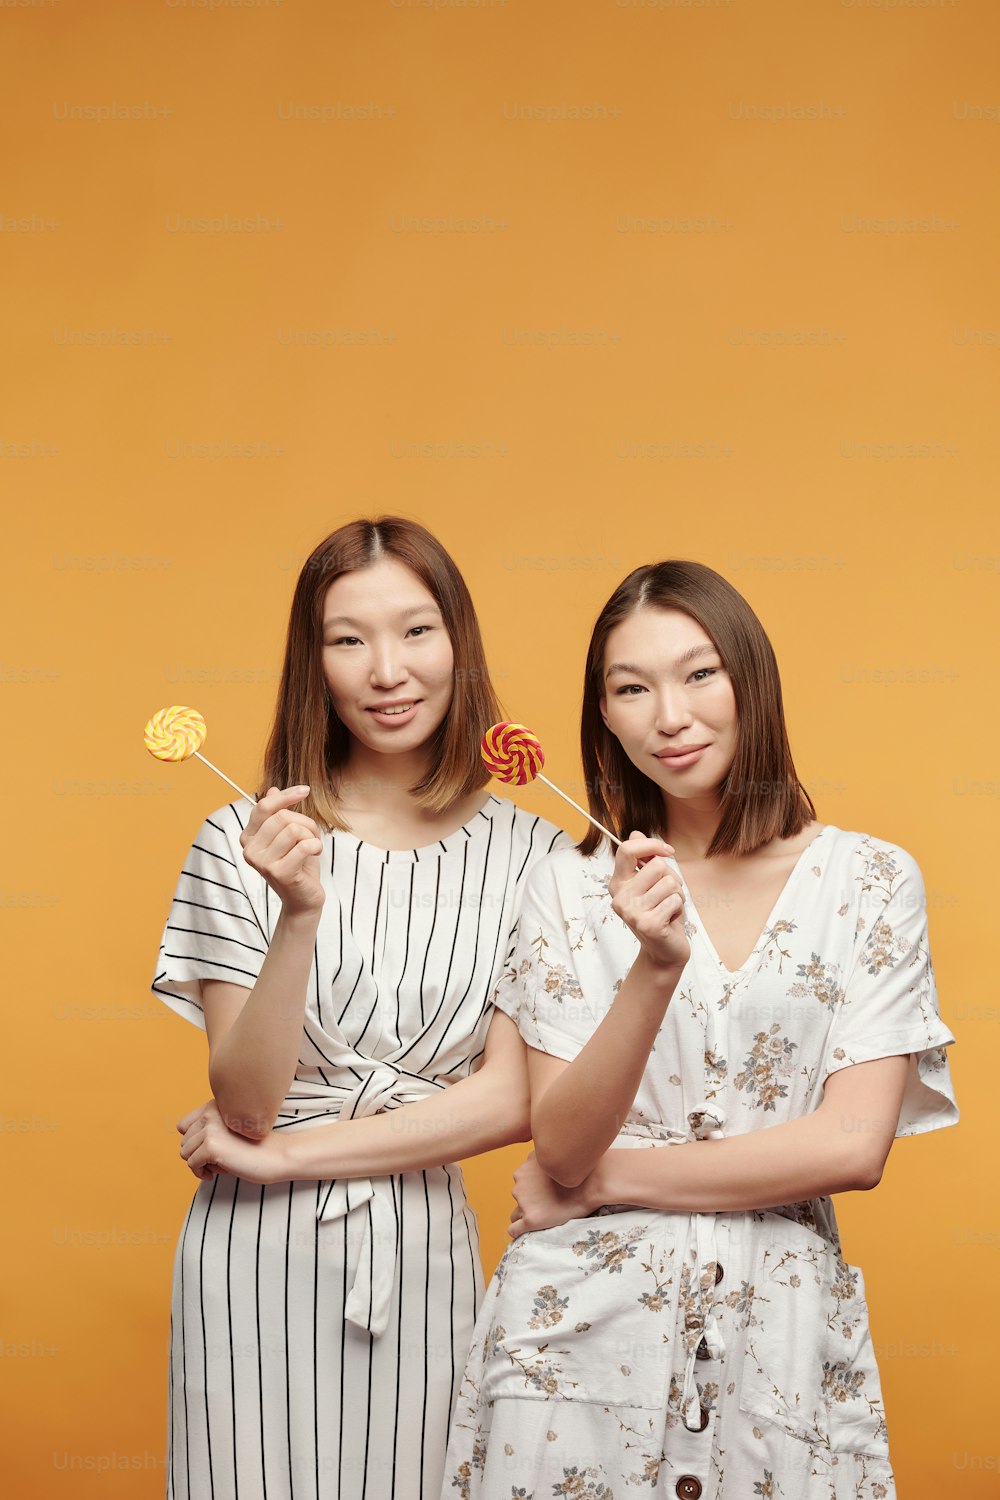 Gêmeas jovens felizes de etnia asiática com pirulitos olhando para você com sorrisos enquanto estão na frente da câmera contra o fundo amarelo